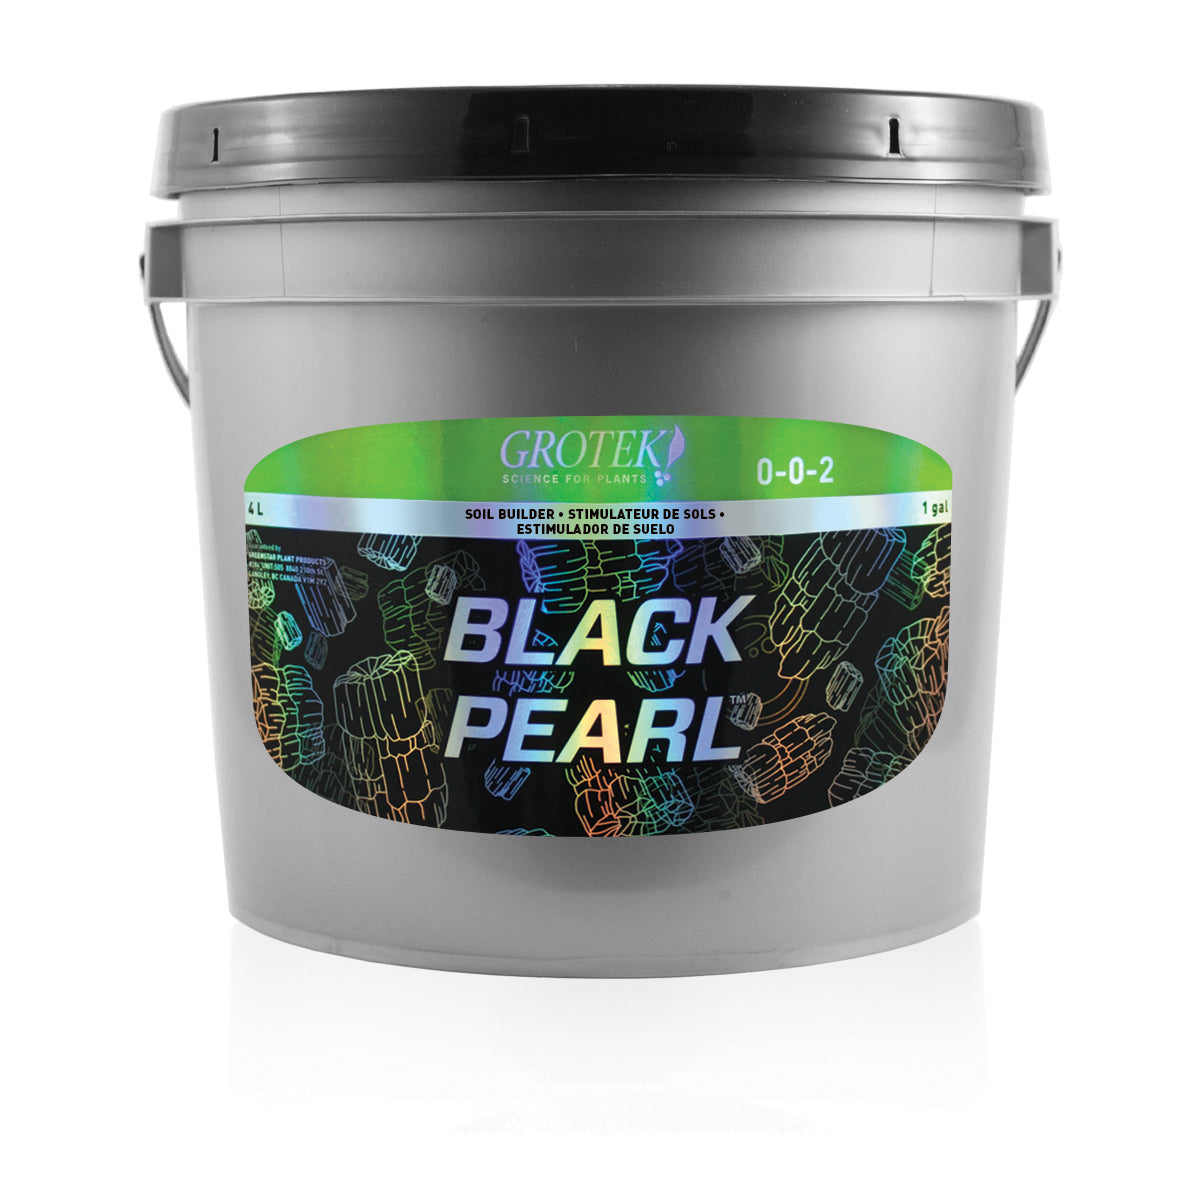 Grotek Black Pearl 4 Liter